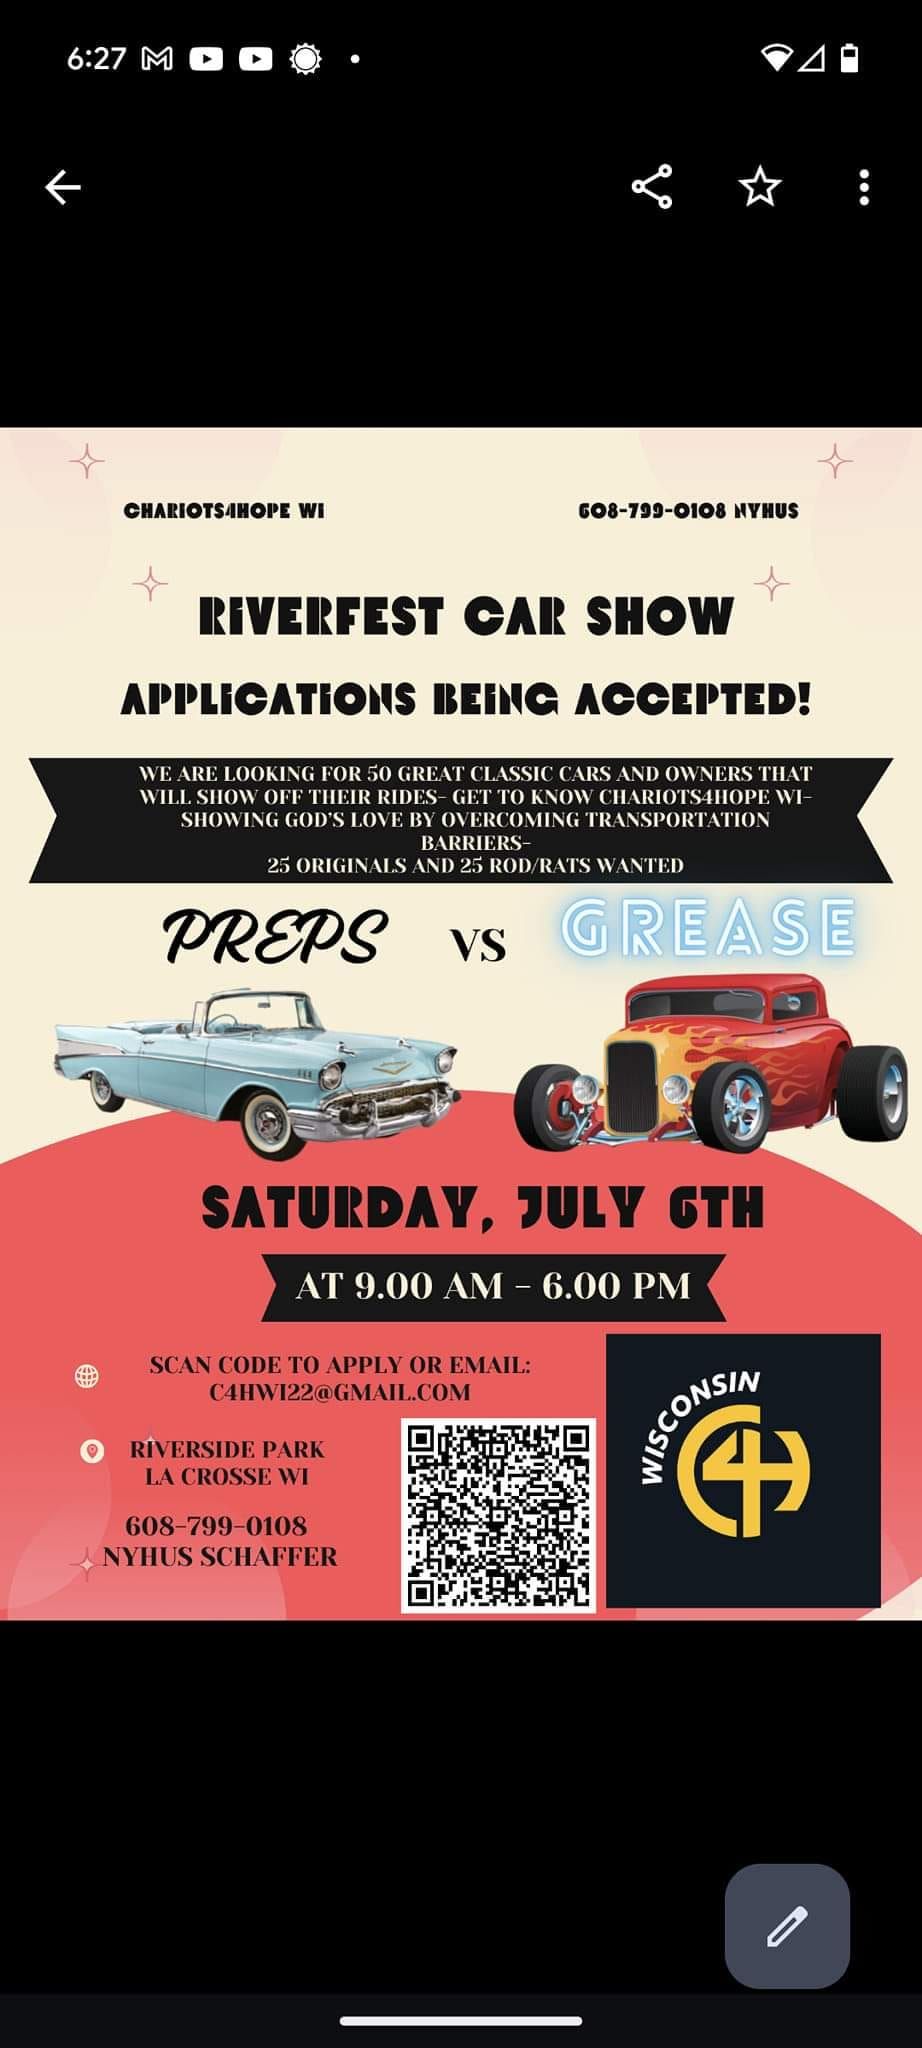 Riverfest Car Show